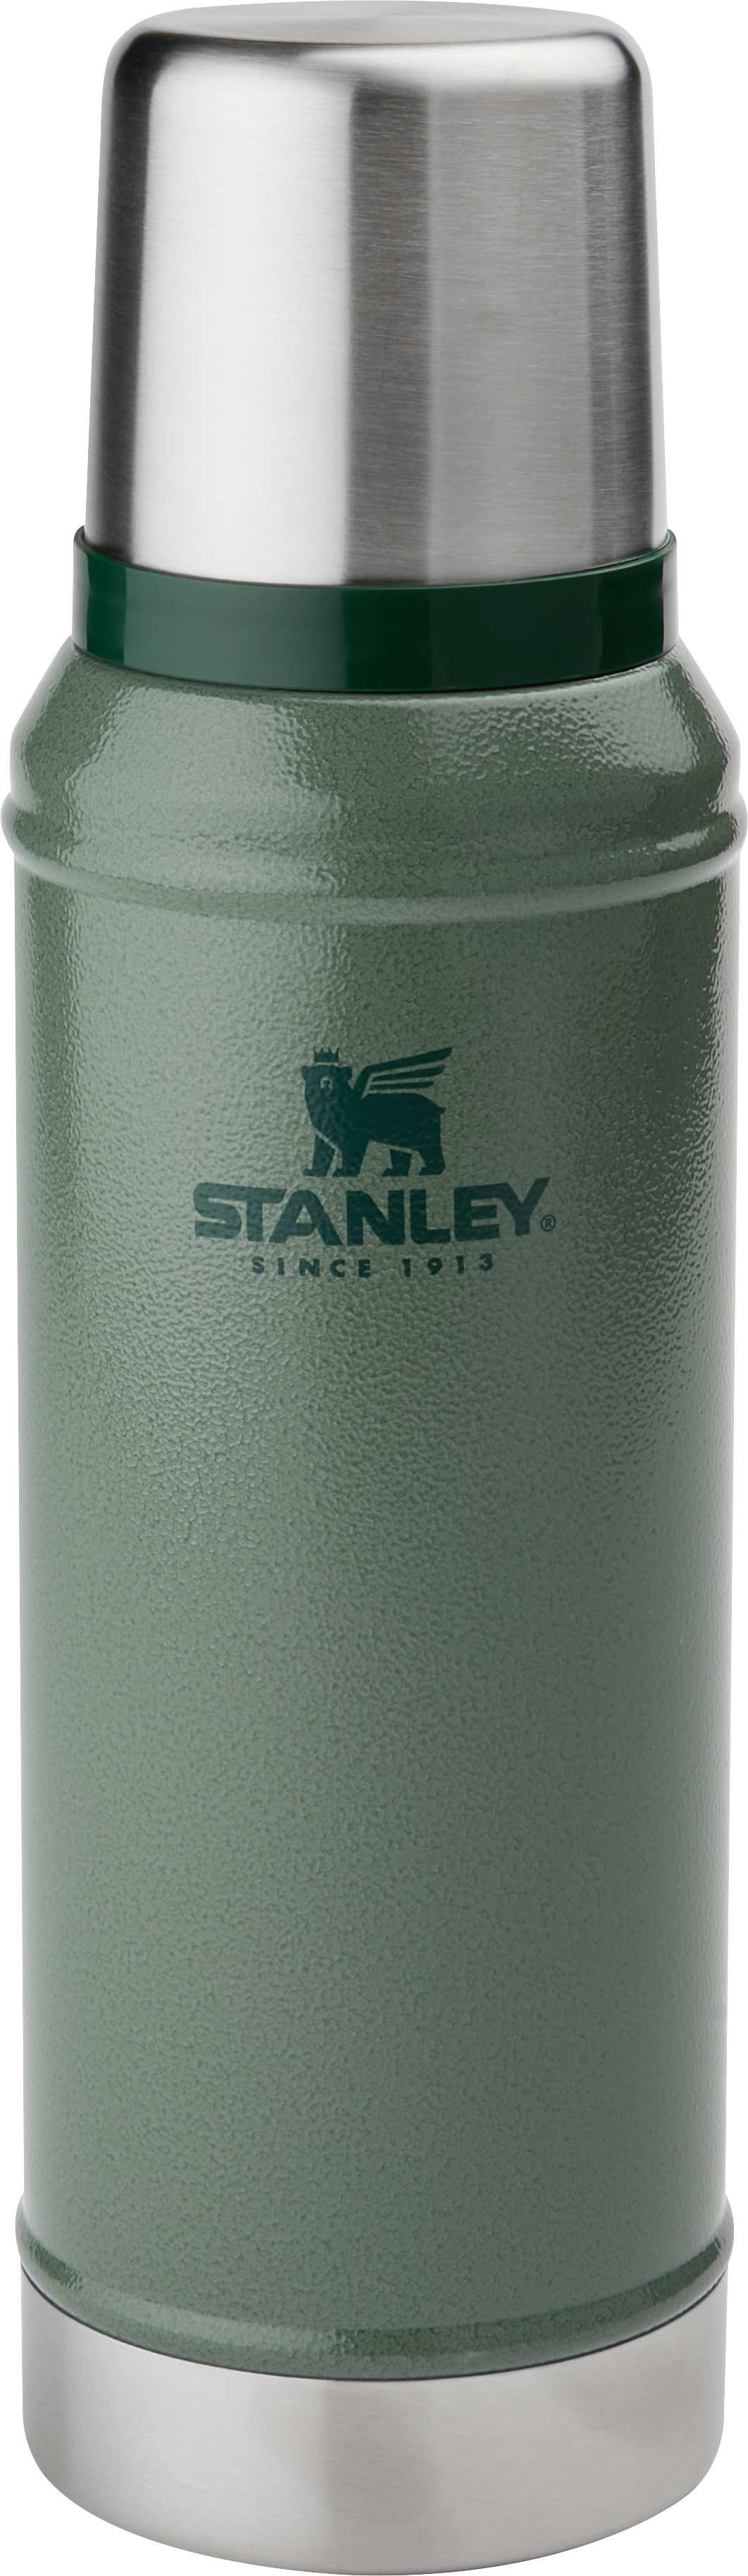 Classic Legendary Bottle by STANLEY, 1 quart Hammertone Green